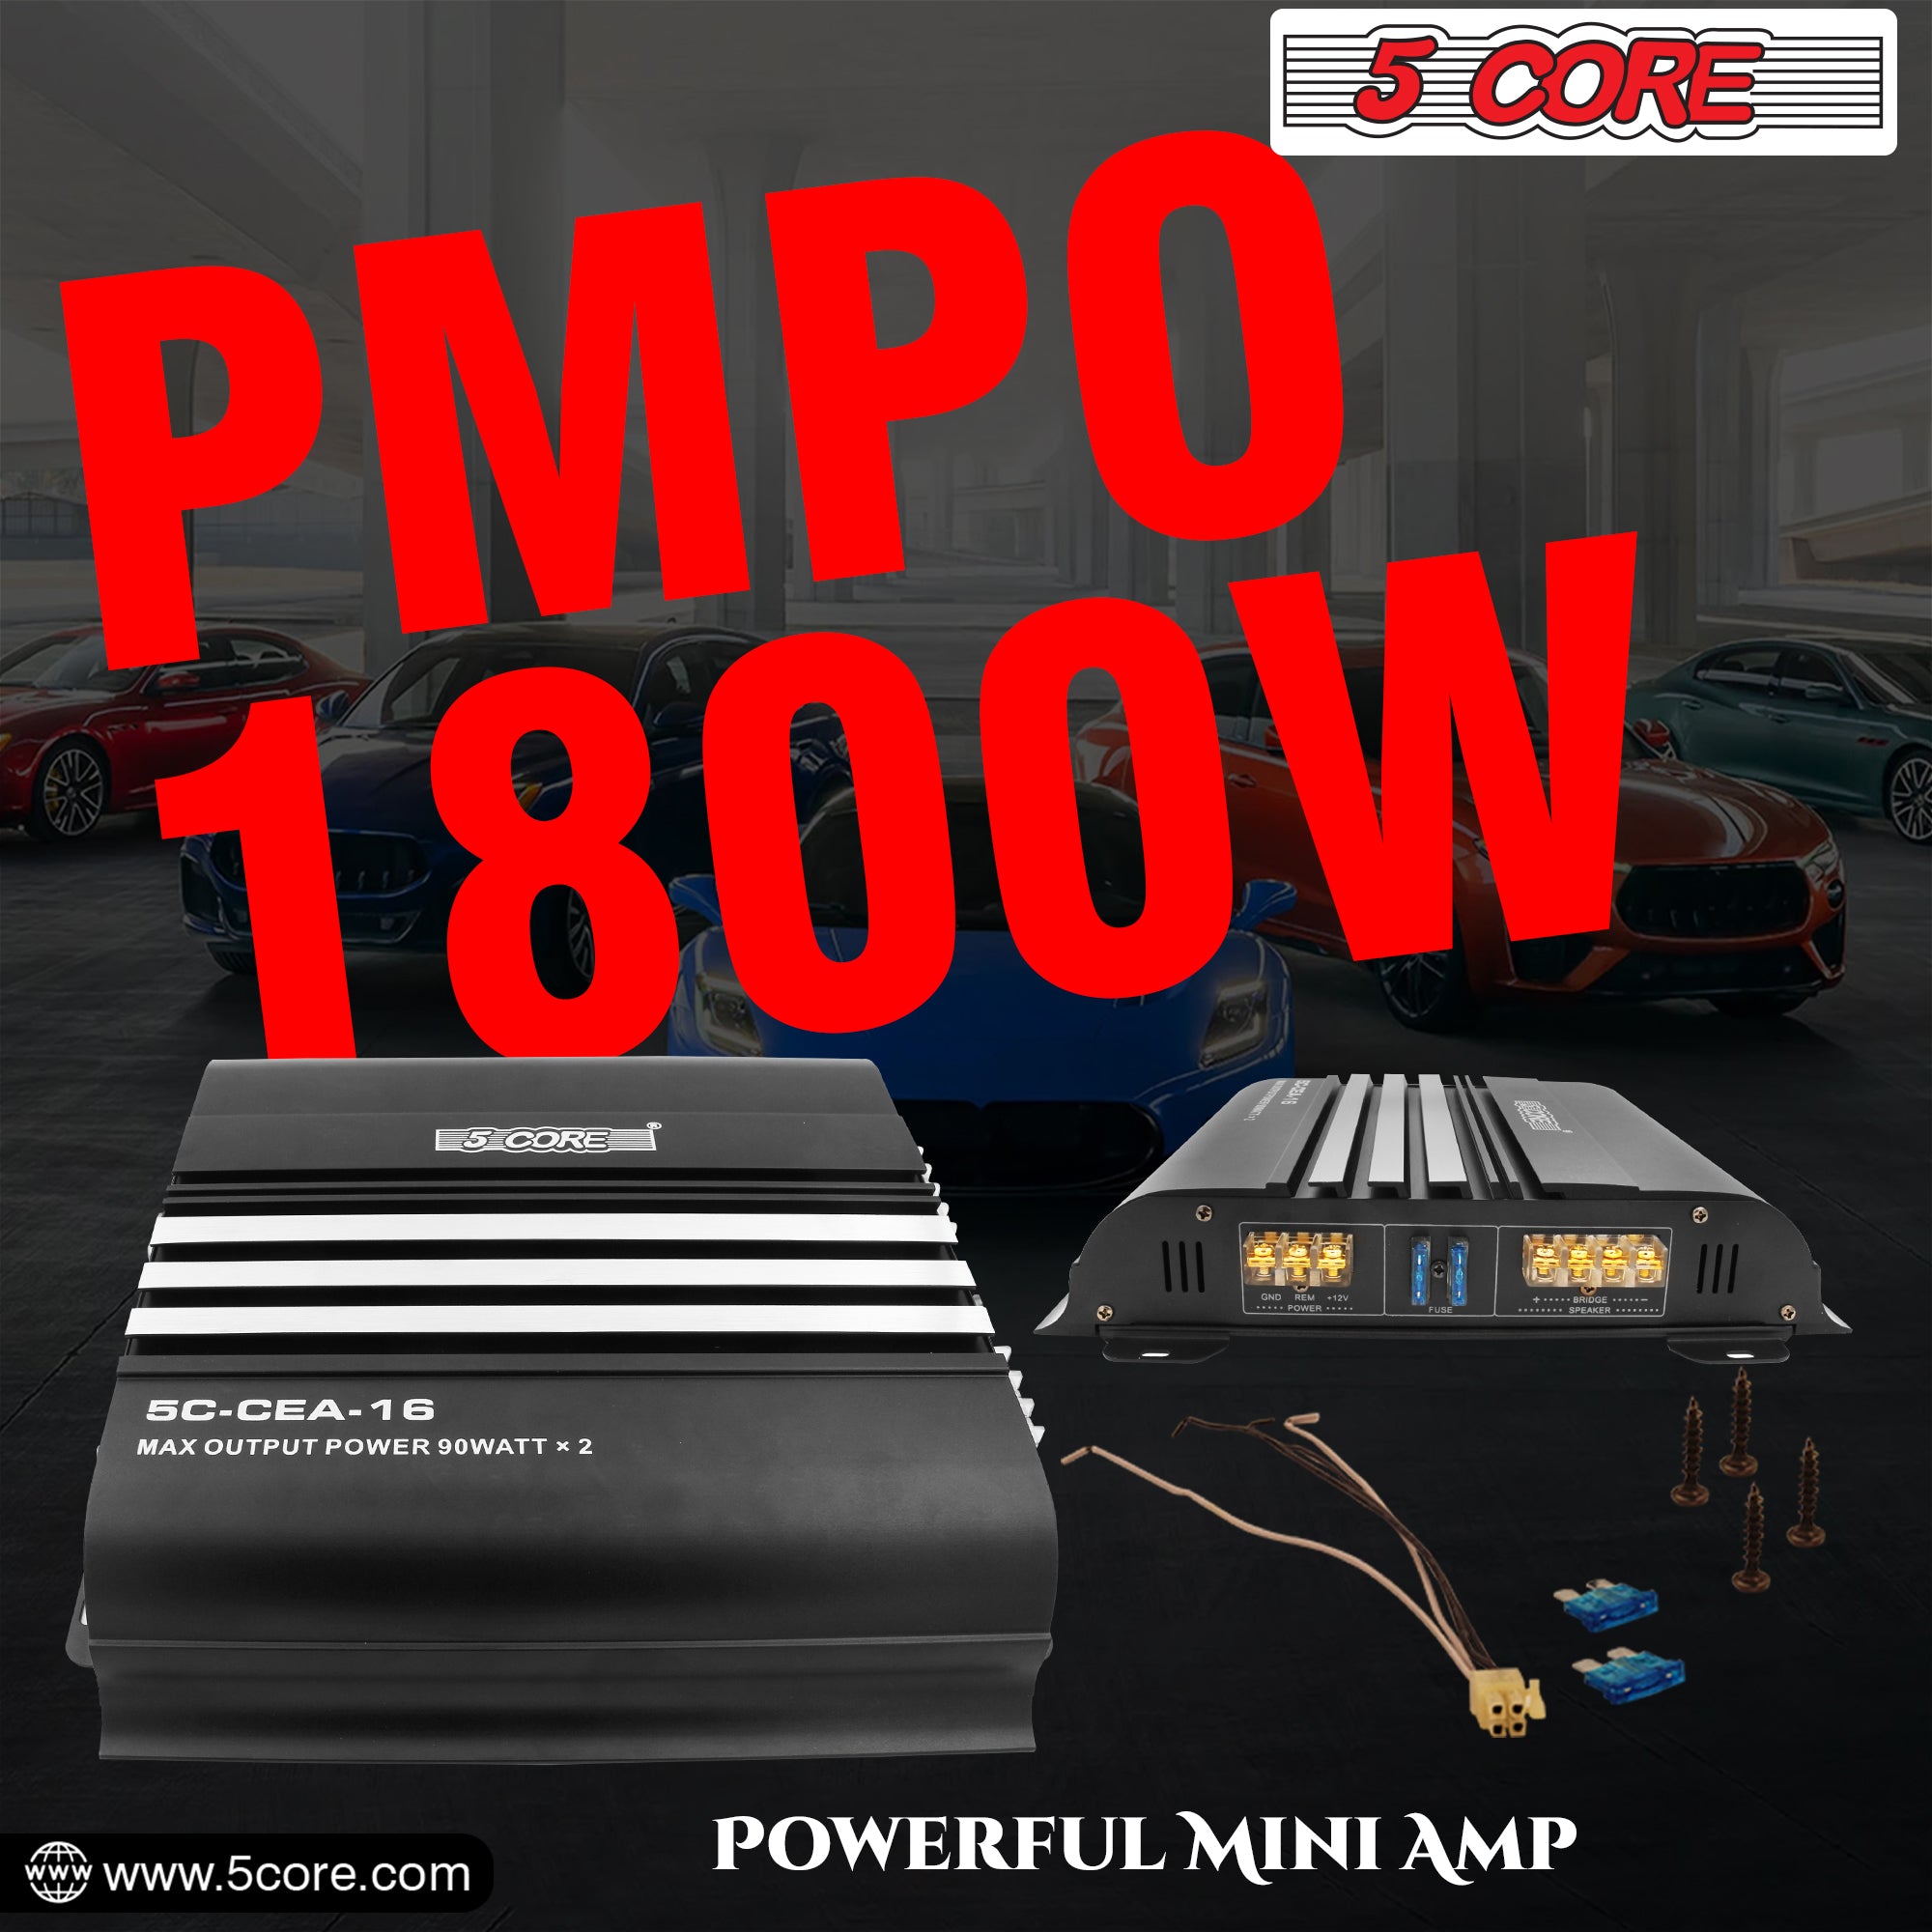 1800w PMPO amp